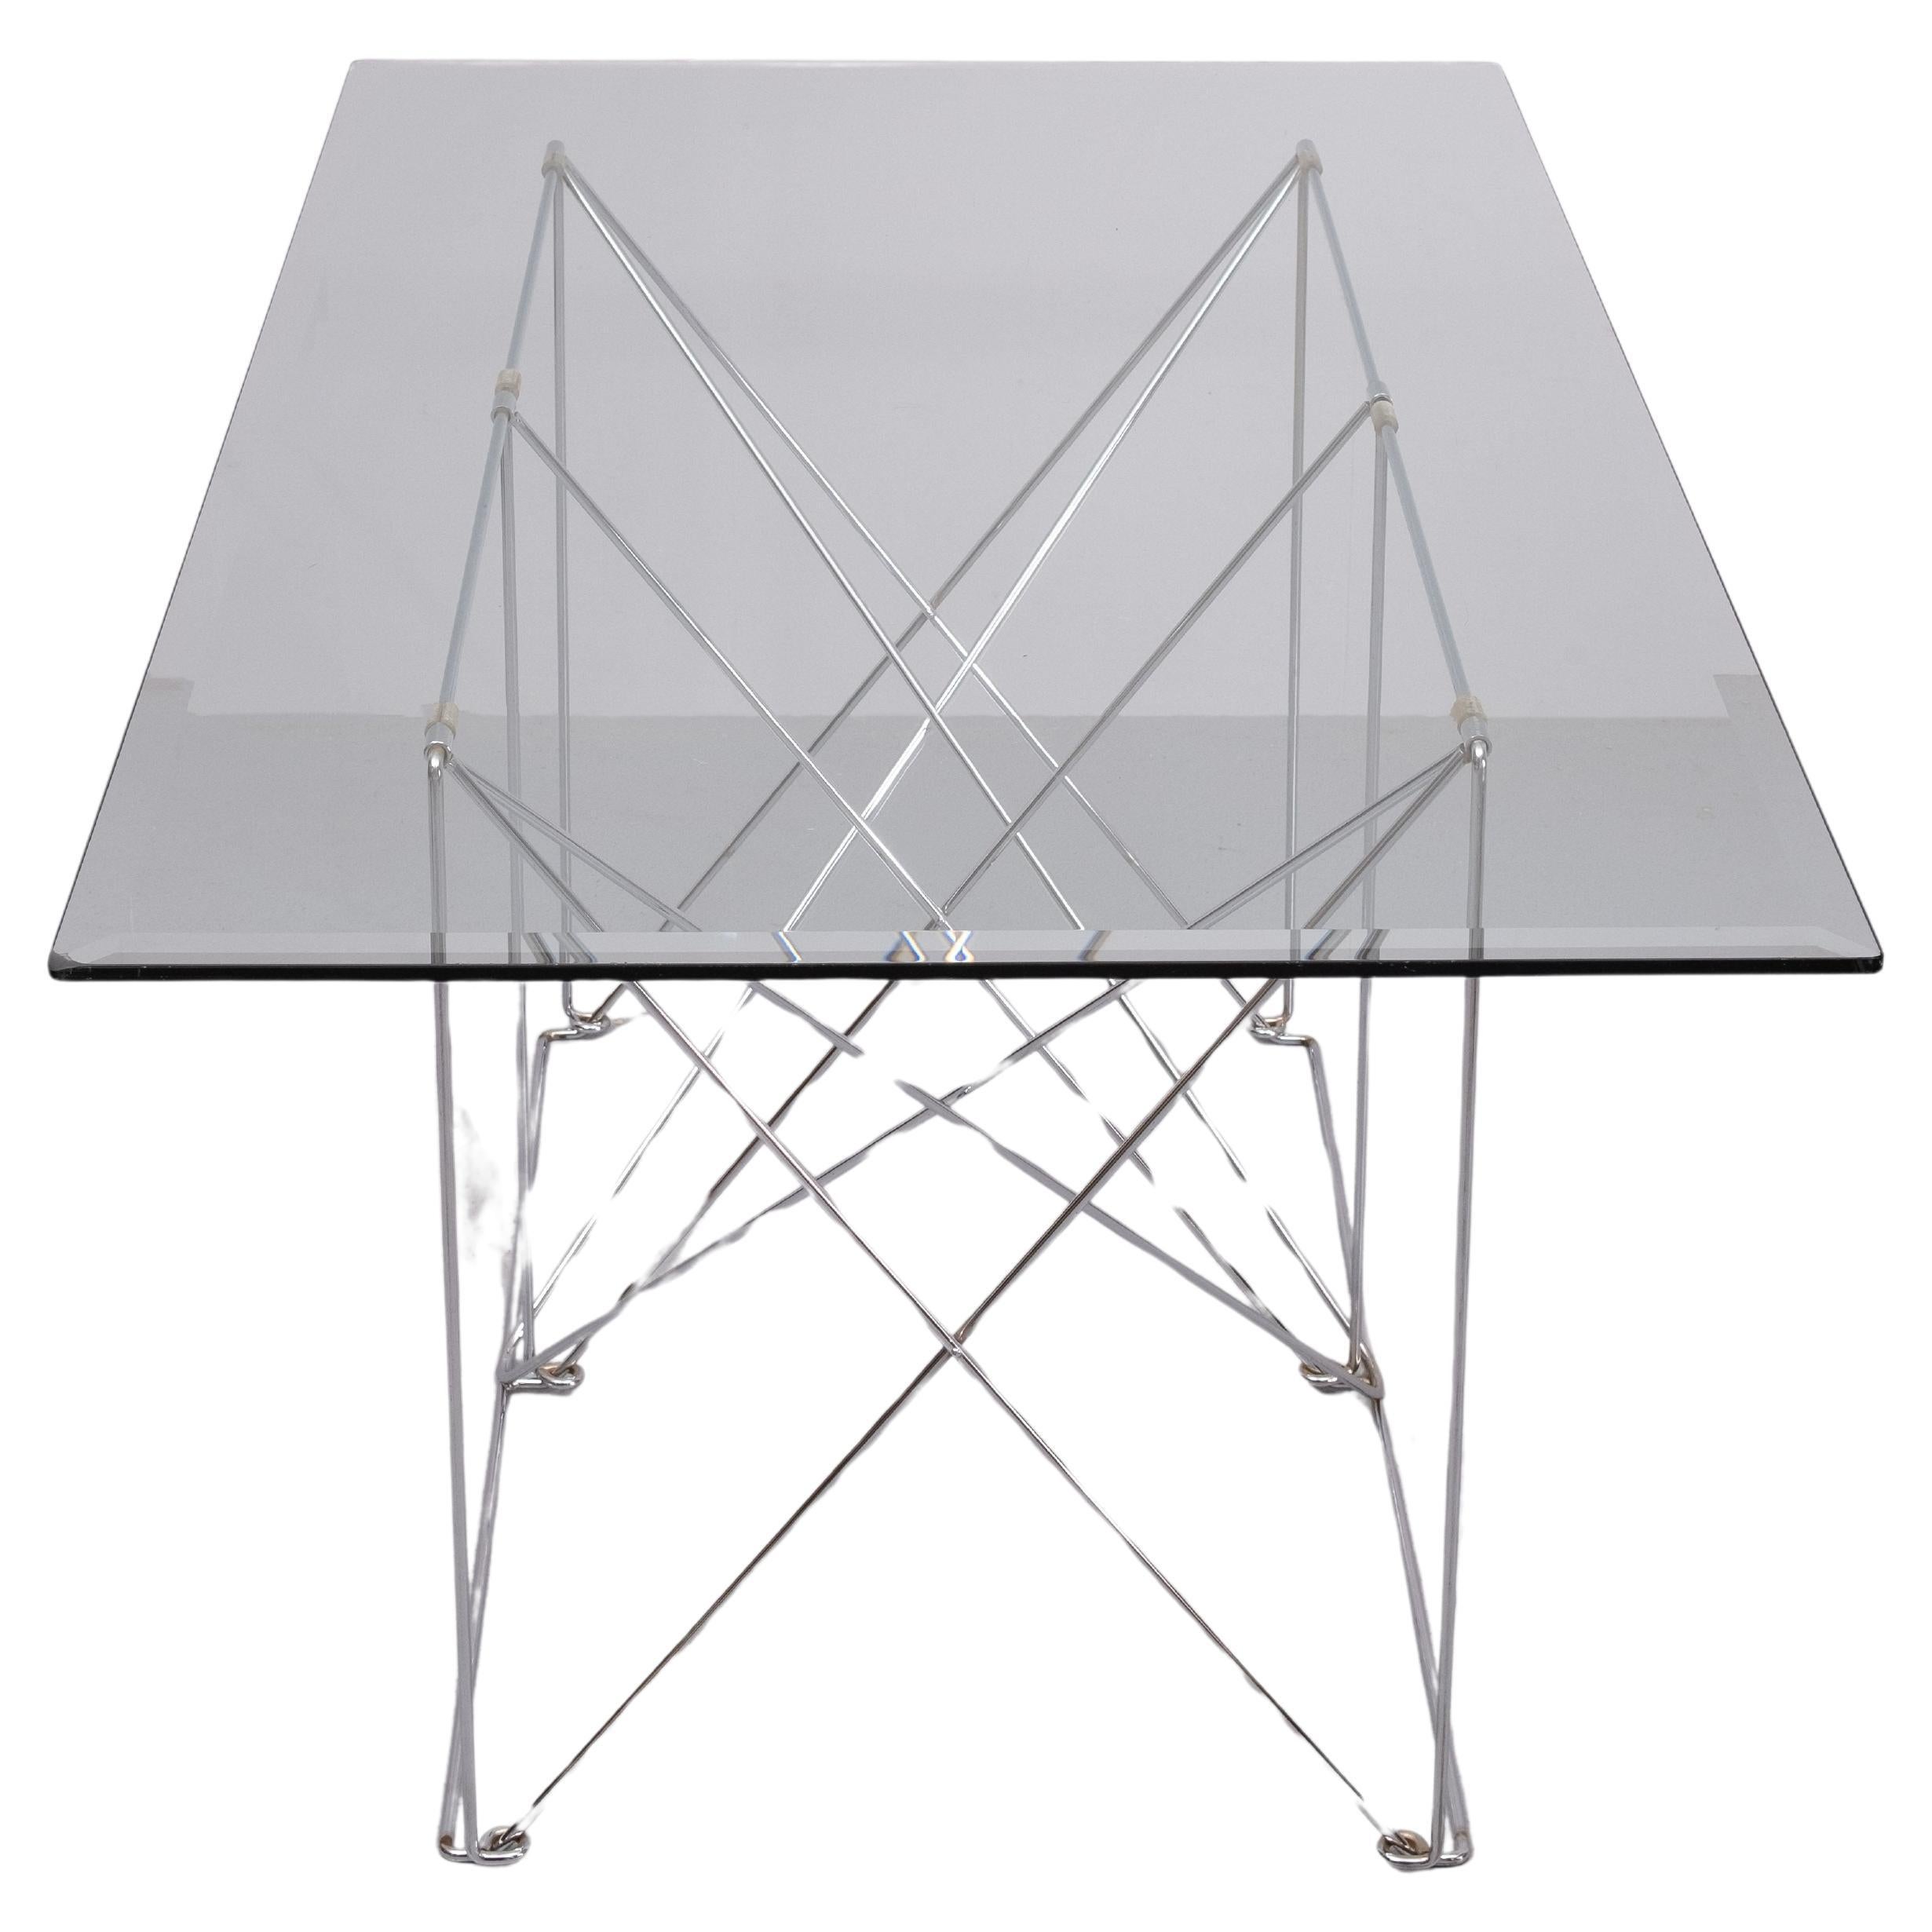 Table de salle à manger minimaliste pliable créée par le designer français Max Sauze. Max Sauze est surtout connu pour ses lampes en aluminium. Il aime beaucoup travailler avec des meubles où le minimalisme et le métal sont à l'honneur. Cette